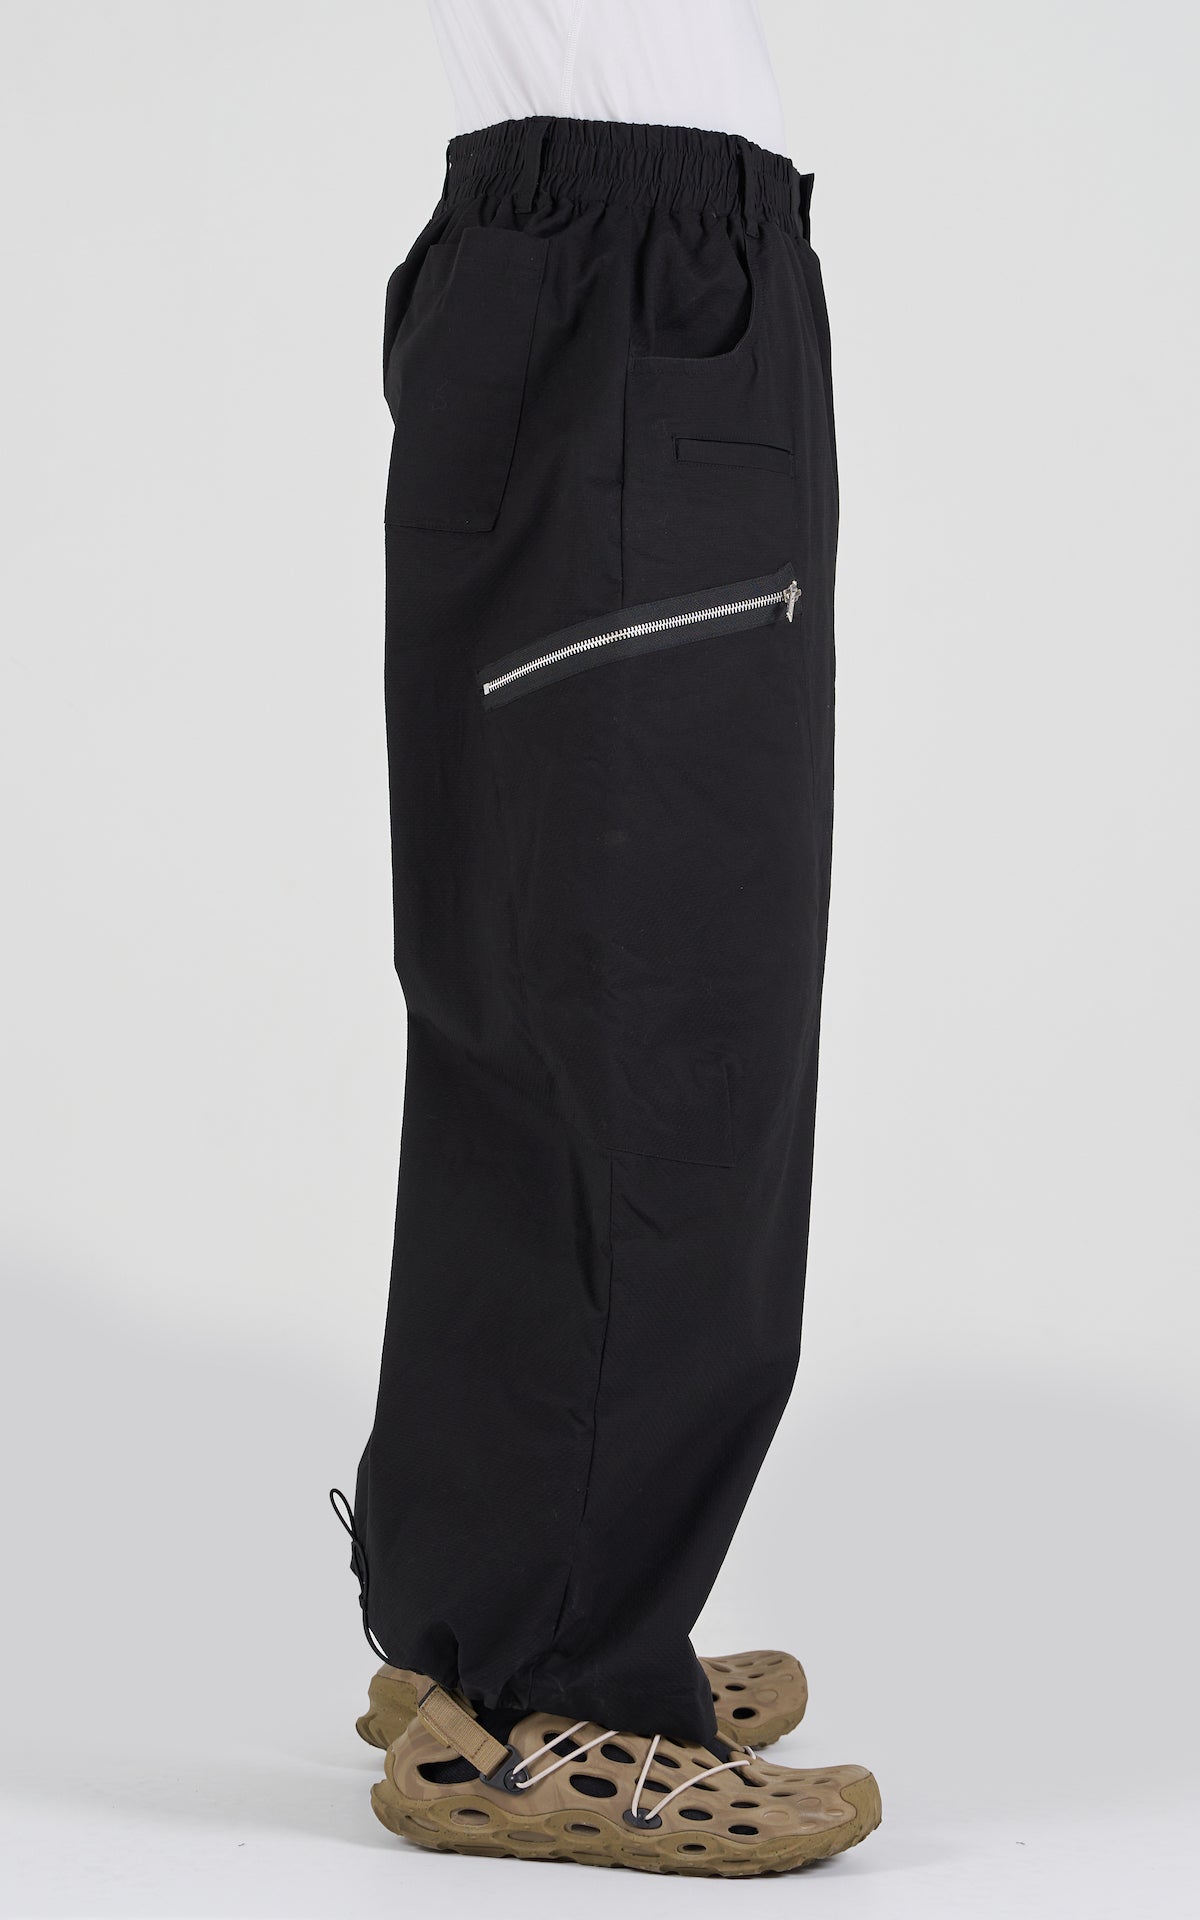 1. "HOMUBOI" Adjustable Big Pants